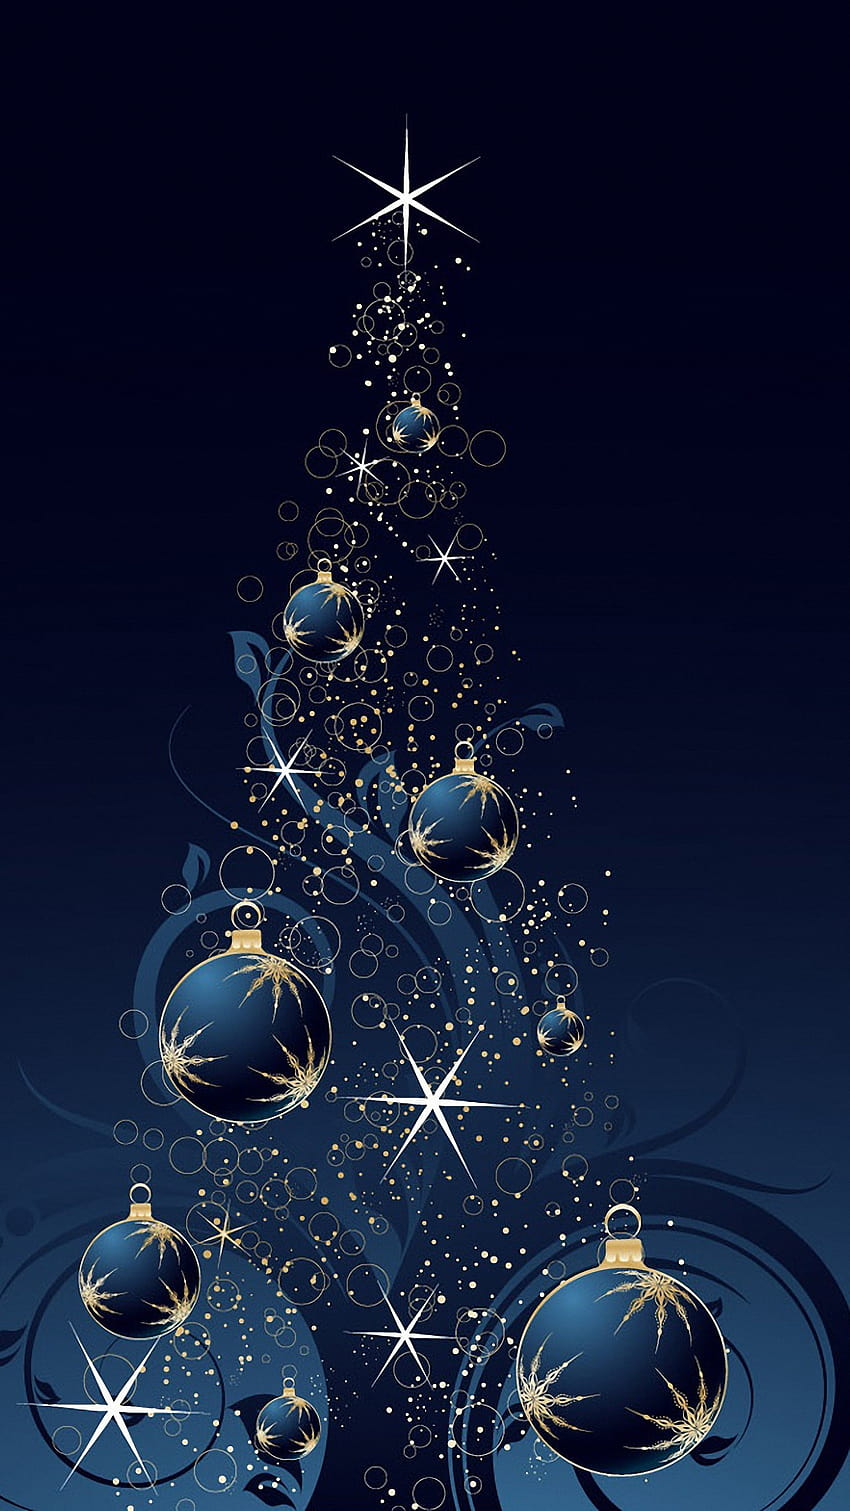 Árbol de navidad azul samsung galaxy s6 1440x2560 [1440x2560] para su, móvil y tableta, teléfono de navidad fondo de pantalla del teléfono